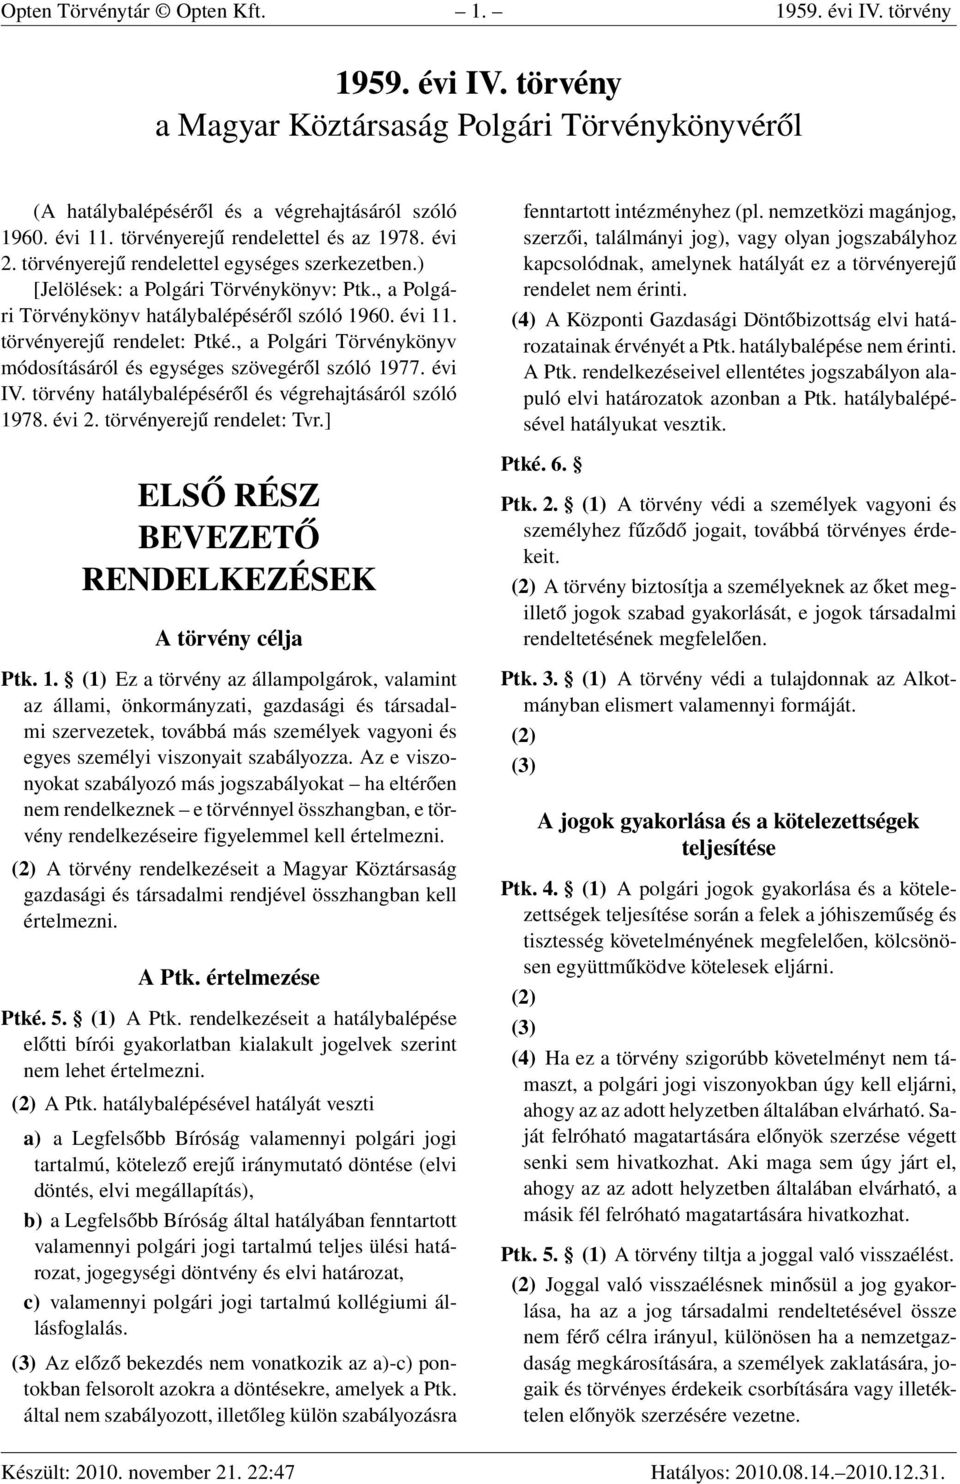 törvényerejű rendelet: Ptké., a Polgári Törvénykönyv módosításáról és egységes szövegéről szóló 1977. évi IV. törvény hatálybalépéséről és végrehajtásáról szóló 1978. évi 2.